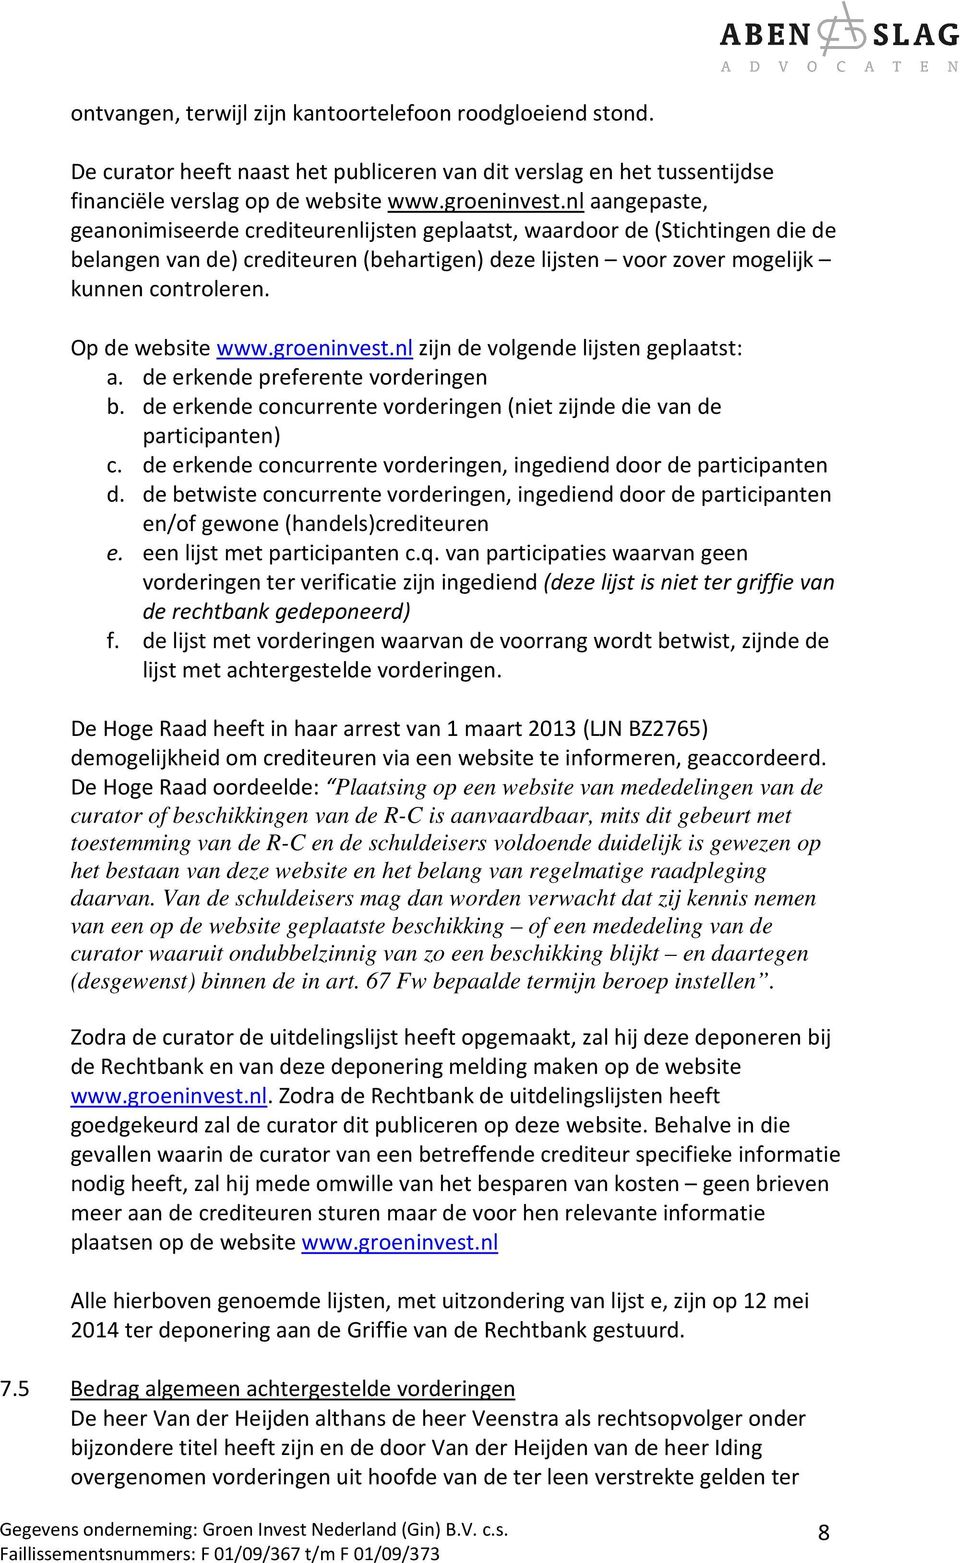 Op de website www.groeninvest.nl zijn de volgende lijsten geplaatst: a. de erkende preferente vorderingen b. de erkende concurrente vorderingen (niet zijnde die van de participanten) c.